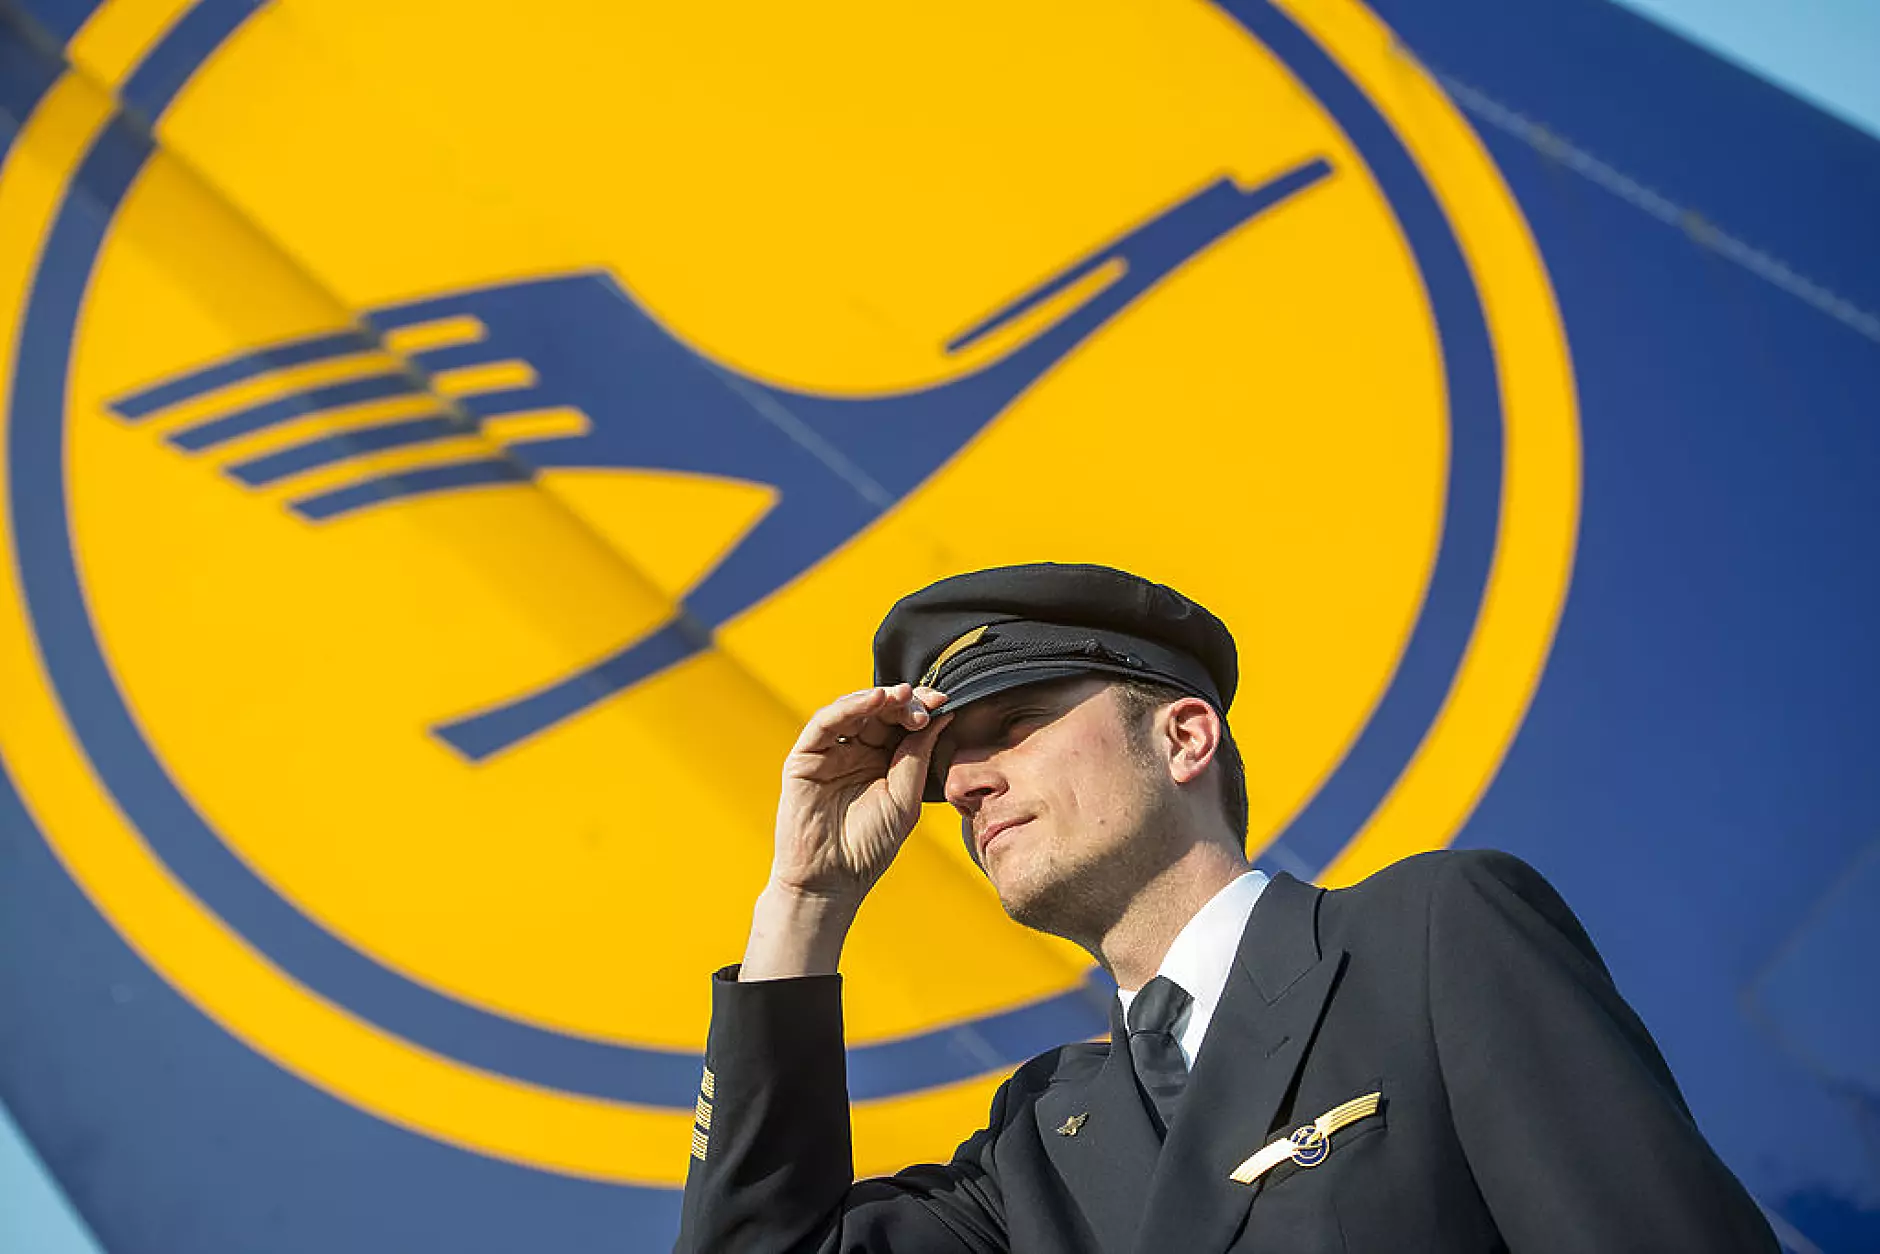 Lufthansa отчита печелившо лято, планира да си върне дълговете 